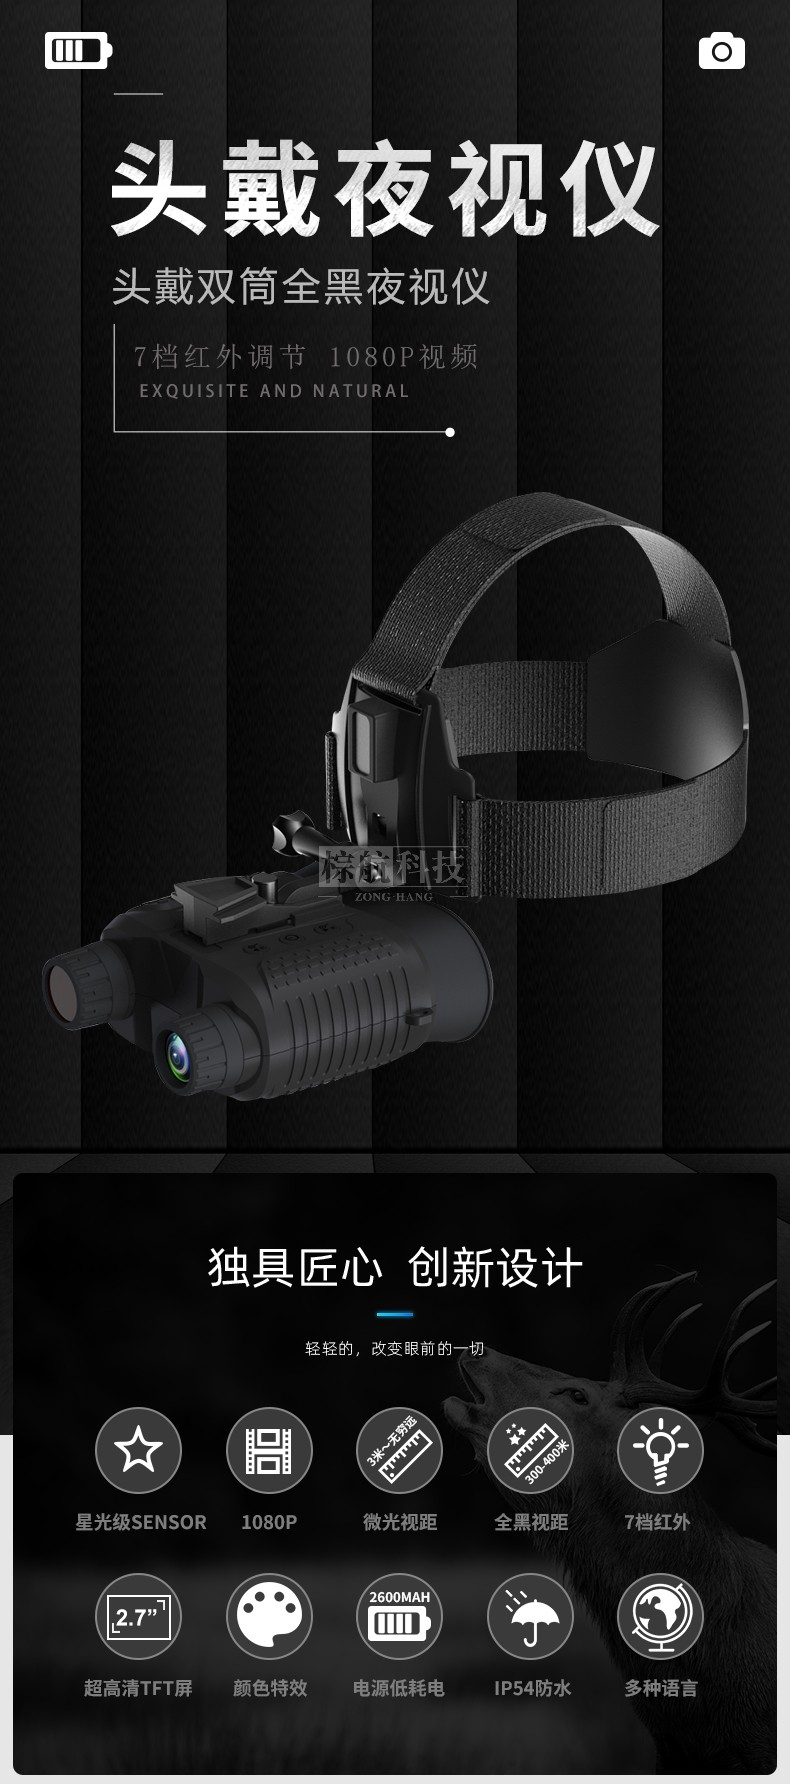 高迪NV8160夜视仪 产品及功能.jpg